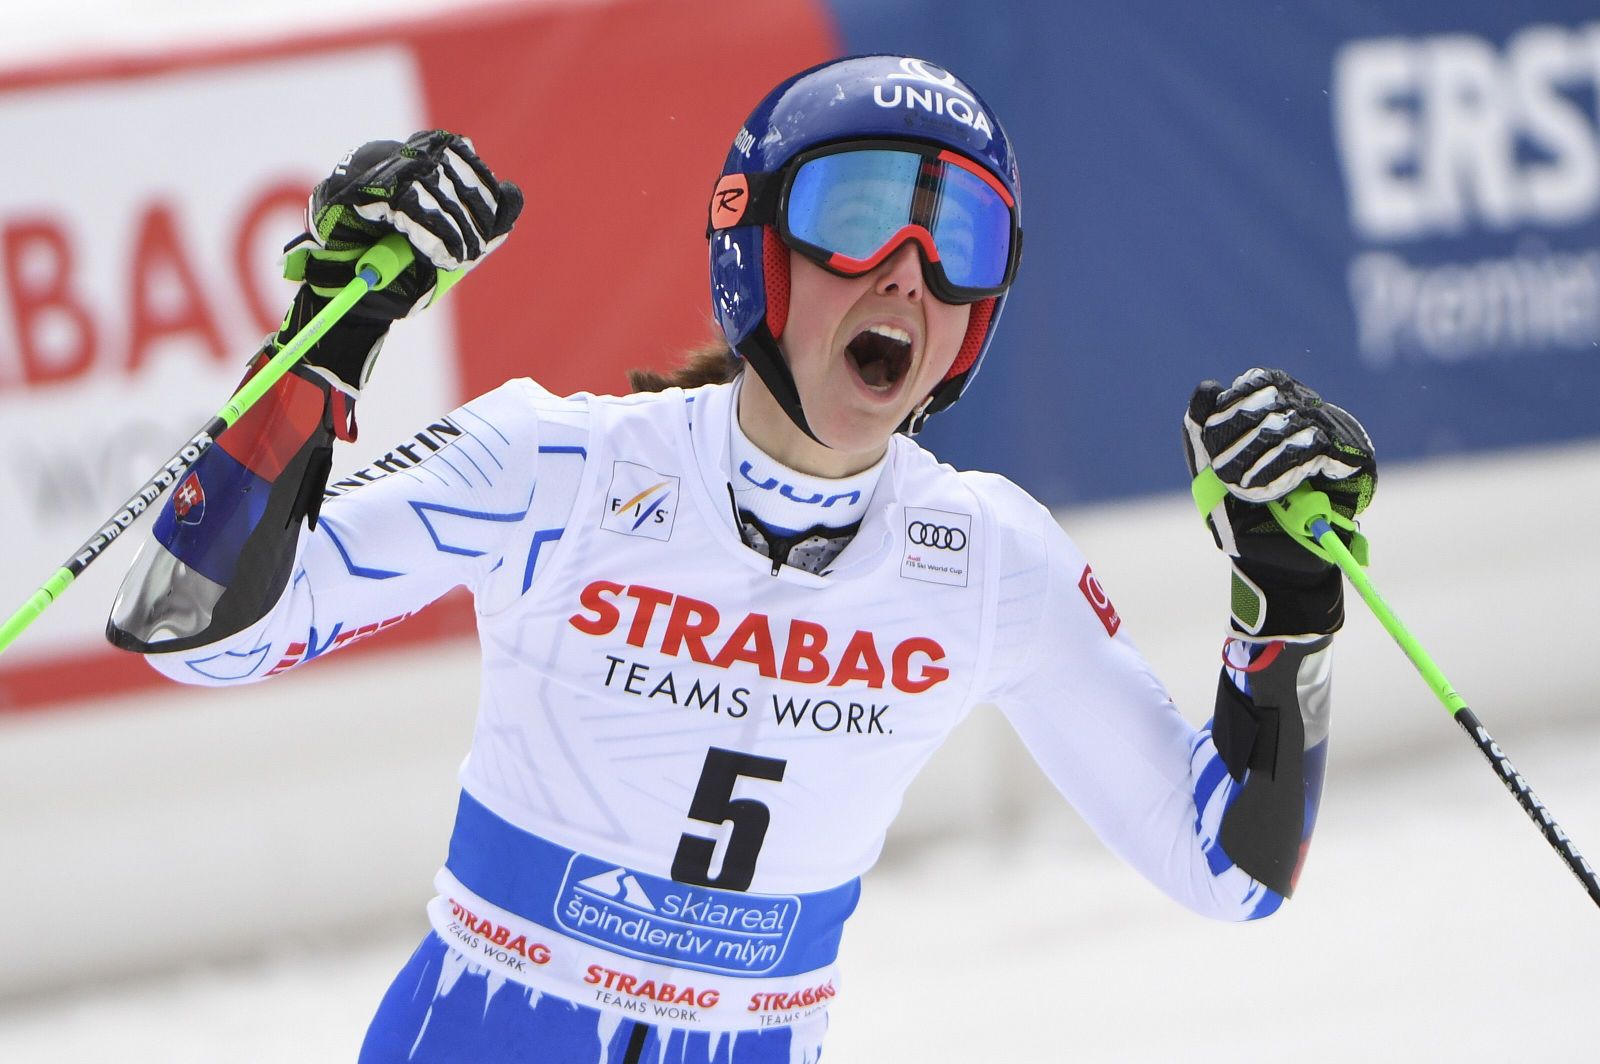 Petra Vlhová opäť veľkolepo zvíťazila v obrovskom slalome!